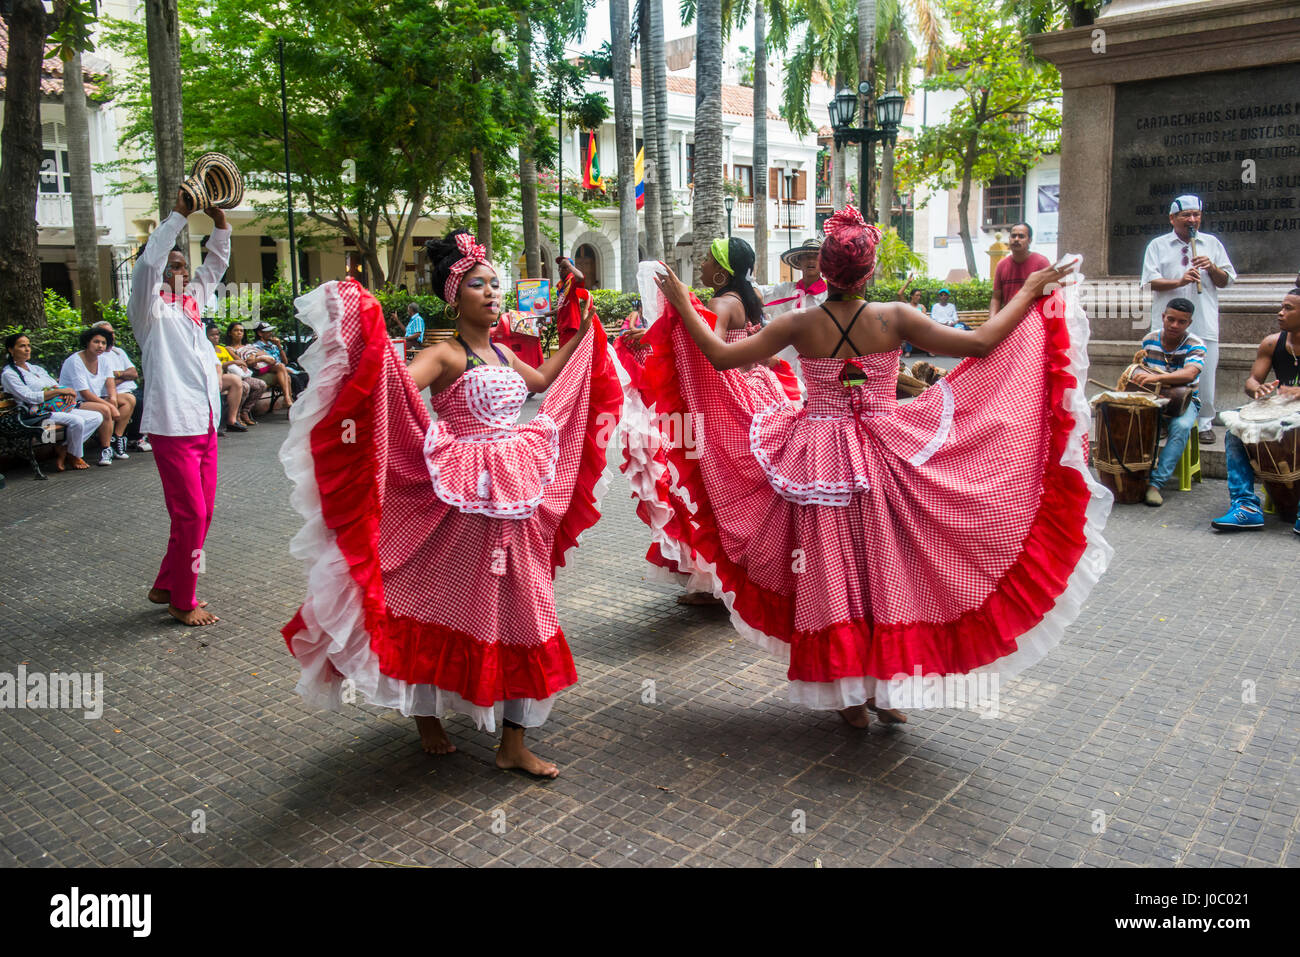 La danse traditionnelle dans la région de Carthagène, Colombie Banque D'Images